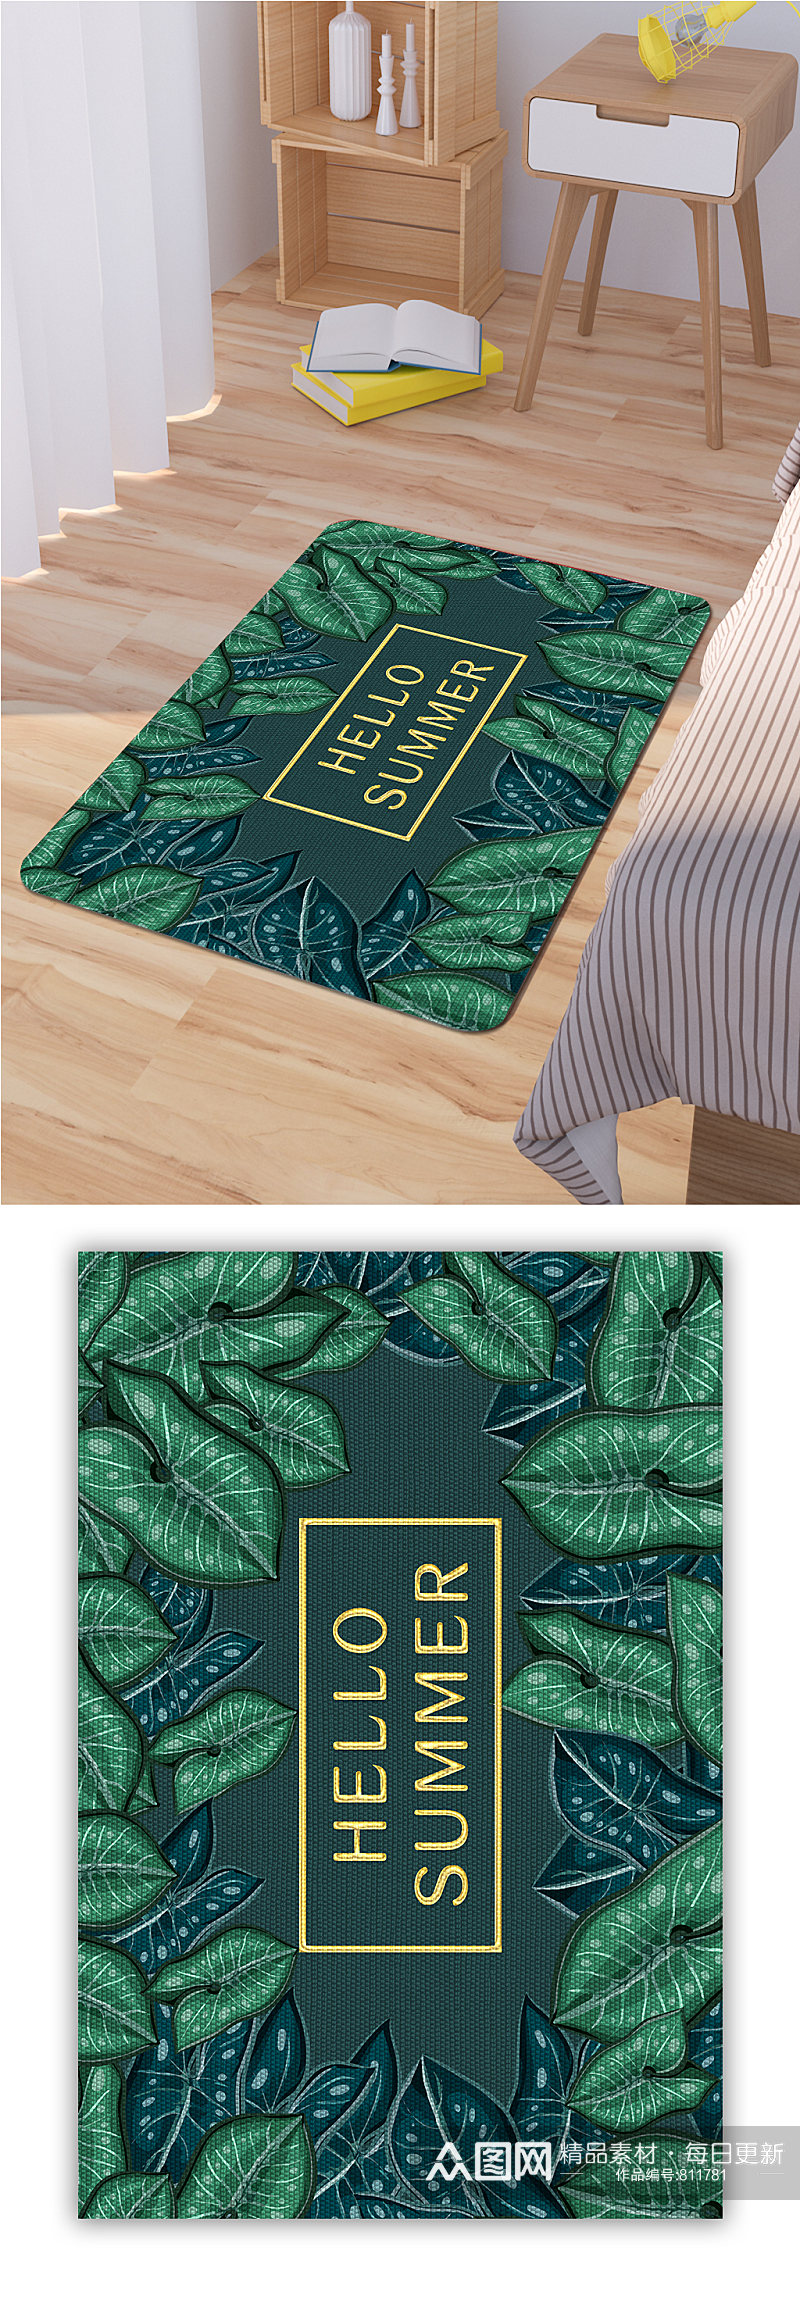 卧室地毯植物叶子地毯素材